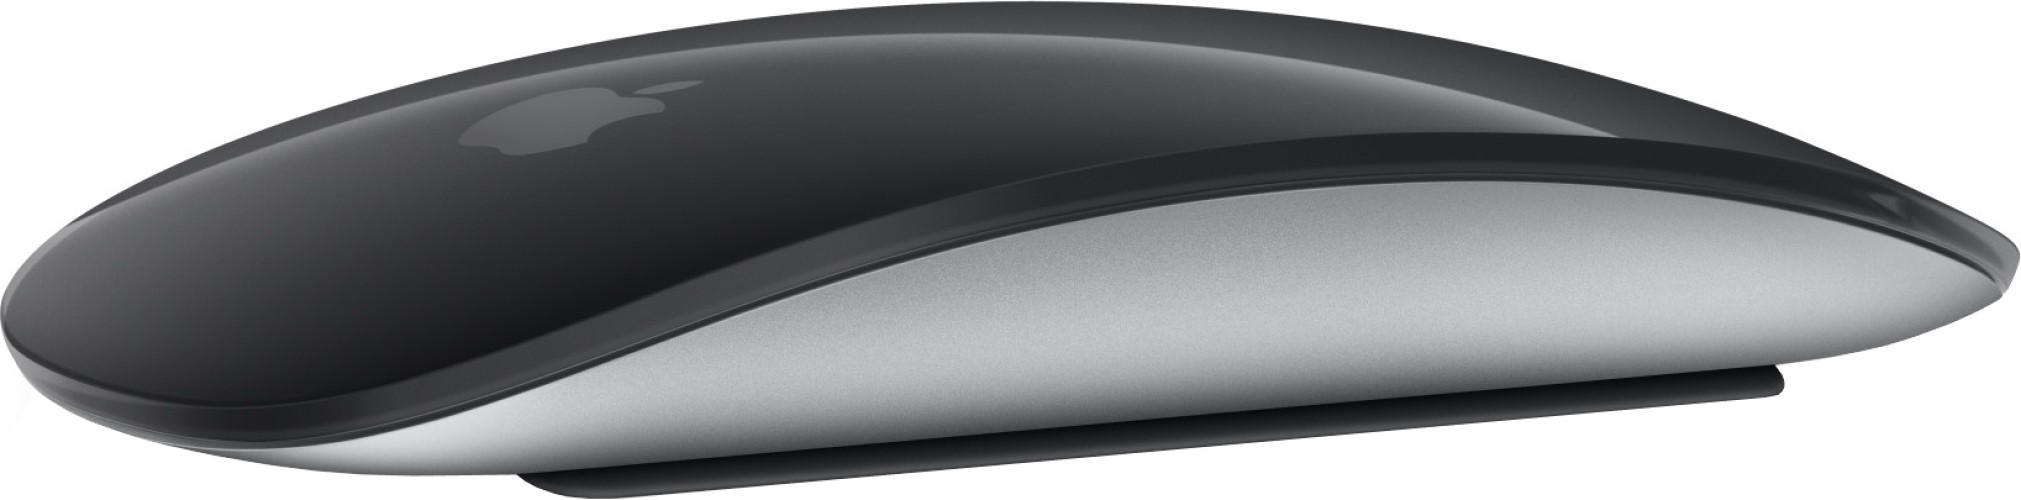 Мышь Apple Magic Mouse 3, беспроводная (Type-C lightning в комплекте), цвет черный. Оригин